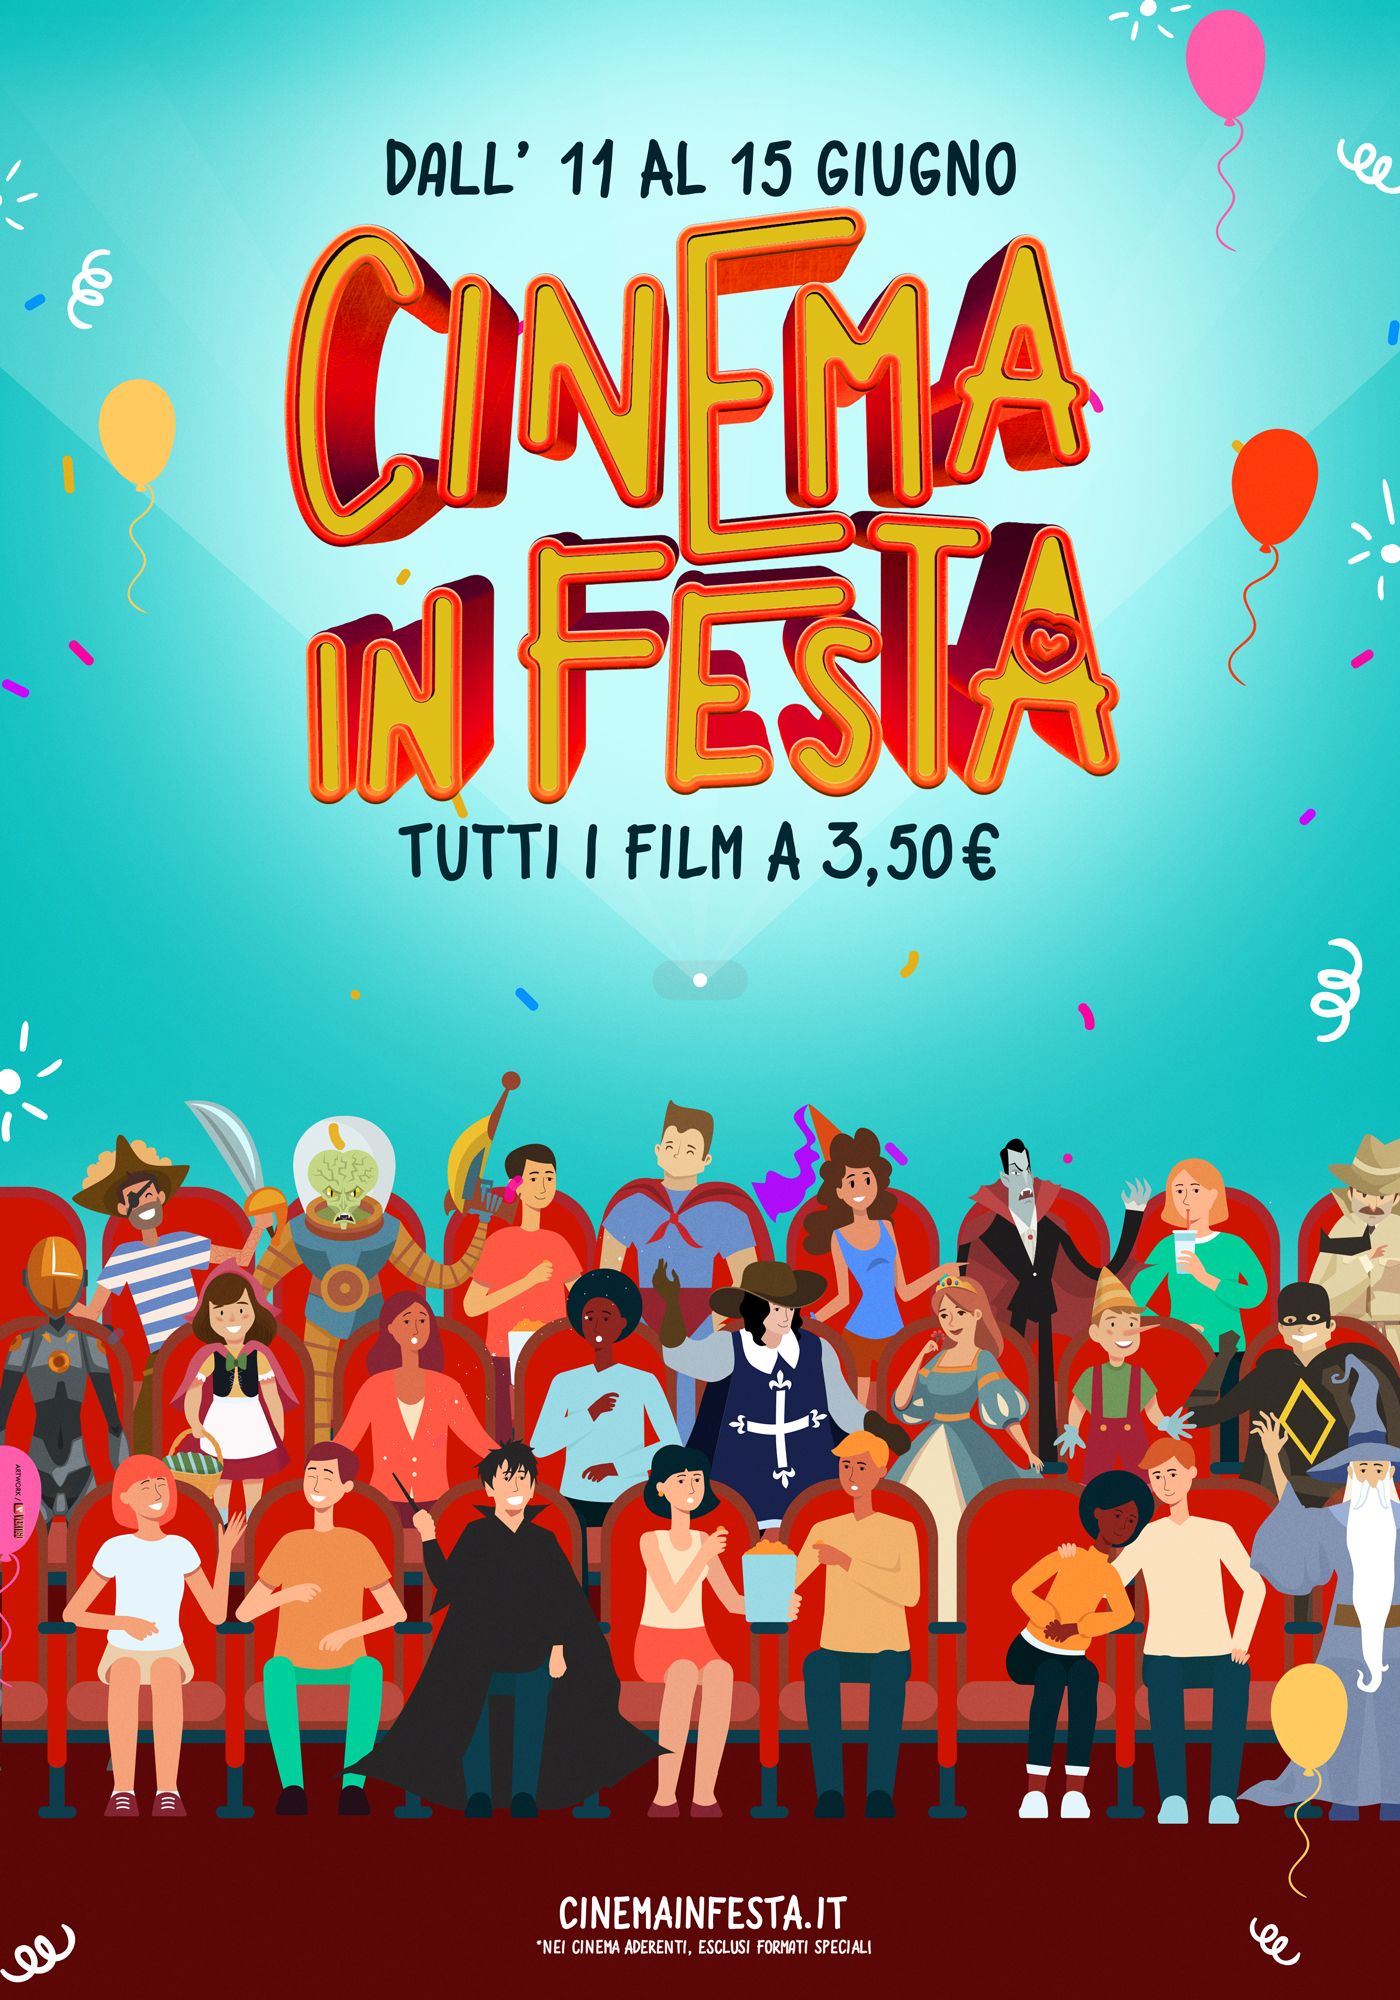 Sanremo: “Cinema in festa” a 3,5 euro dall’11 al 15 giugno